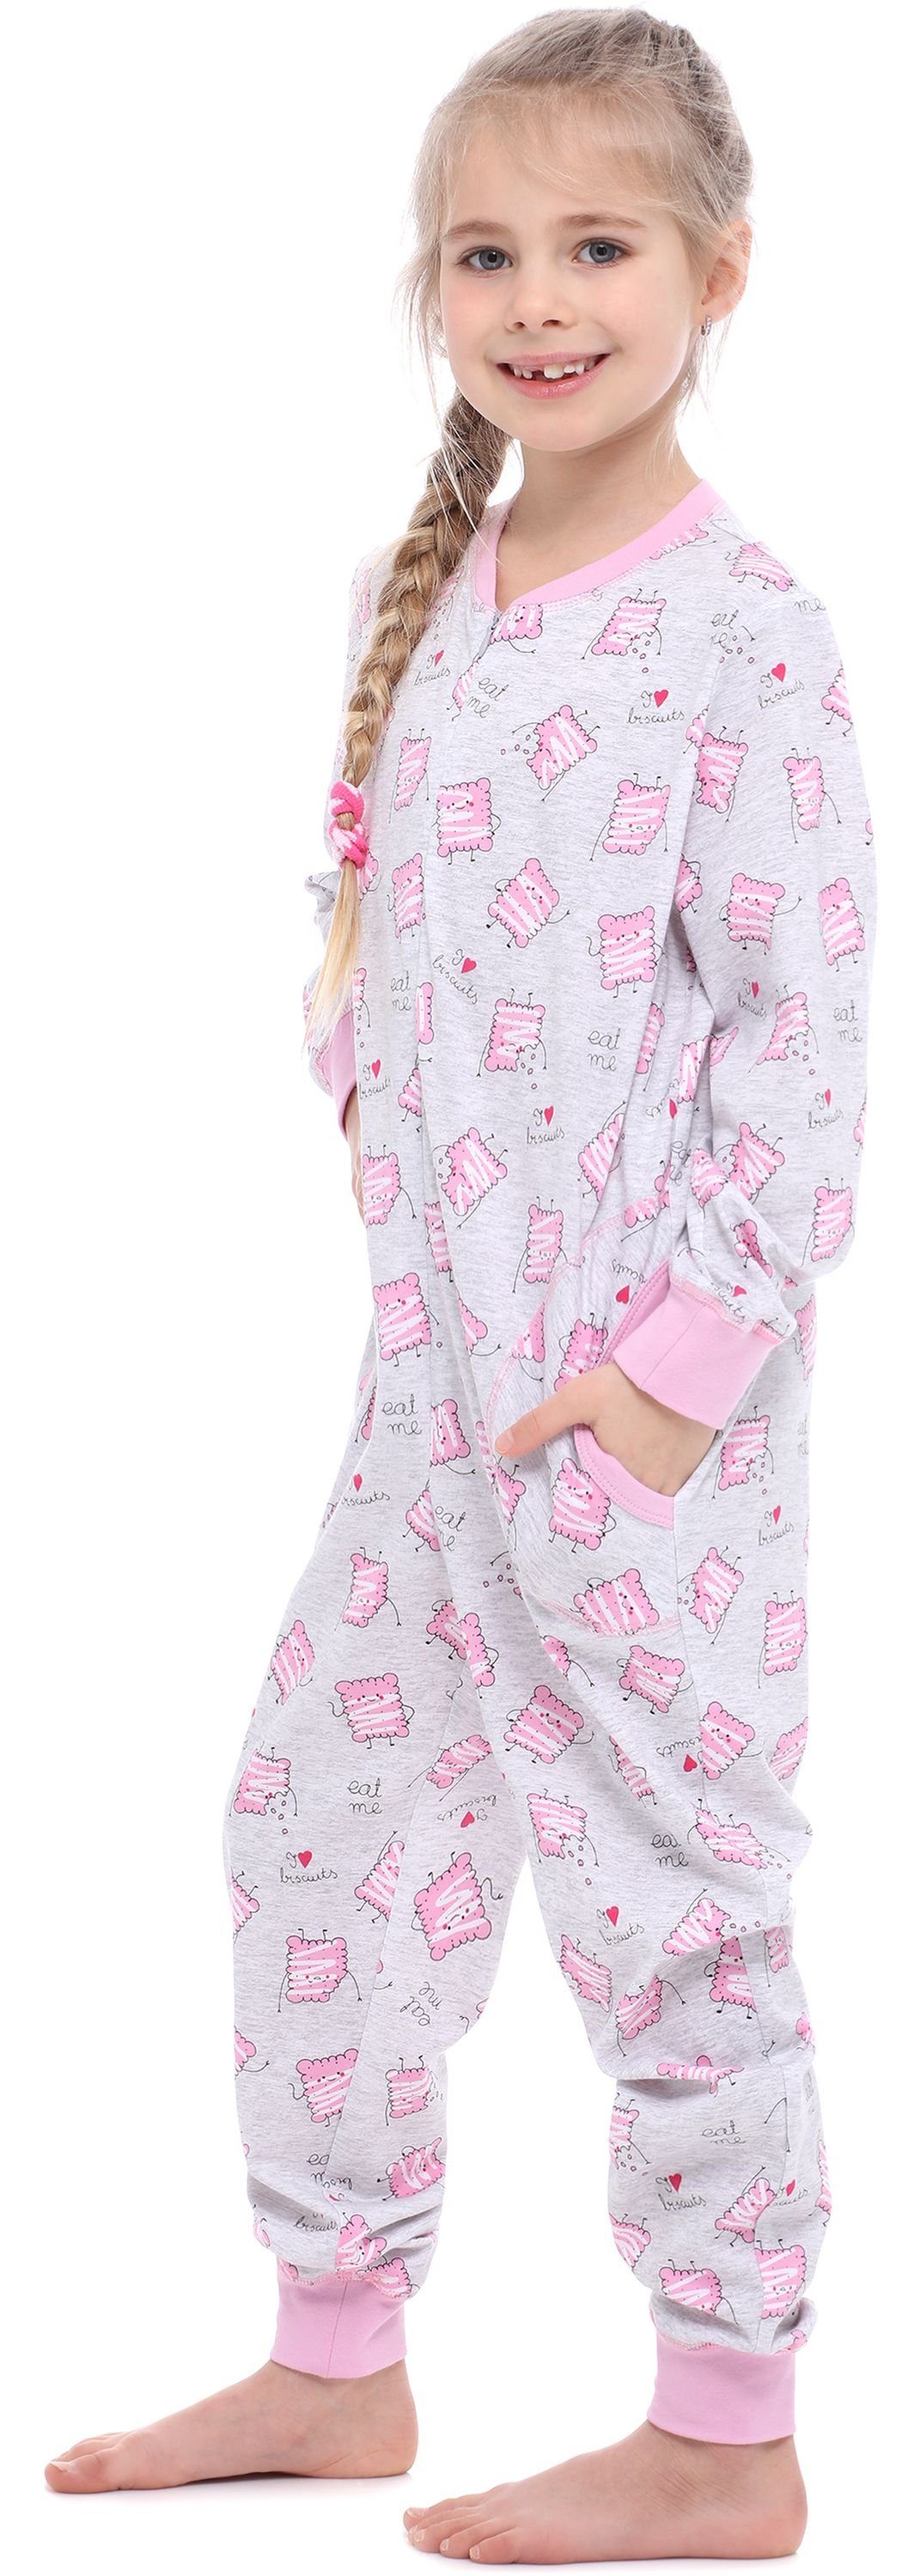 Schlafanzug MS10-186 Jumpsuit Merry Style Mädchen Kekse Melange Schlafanzug